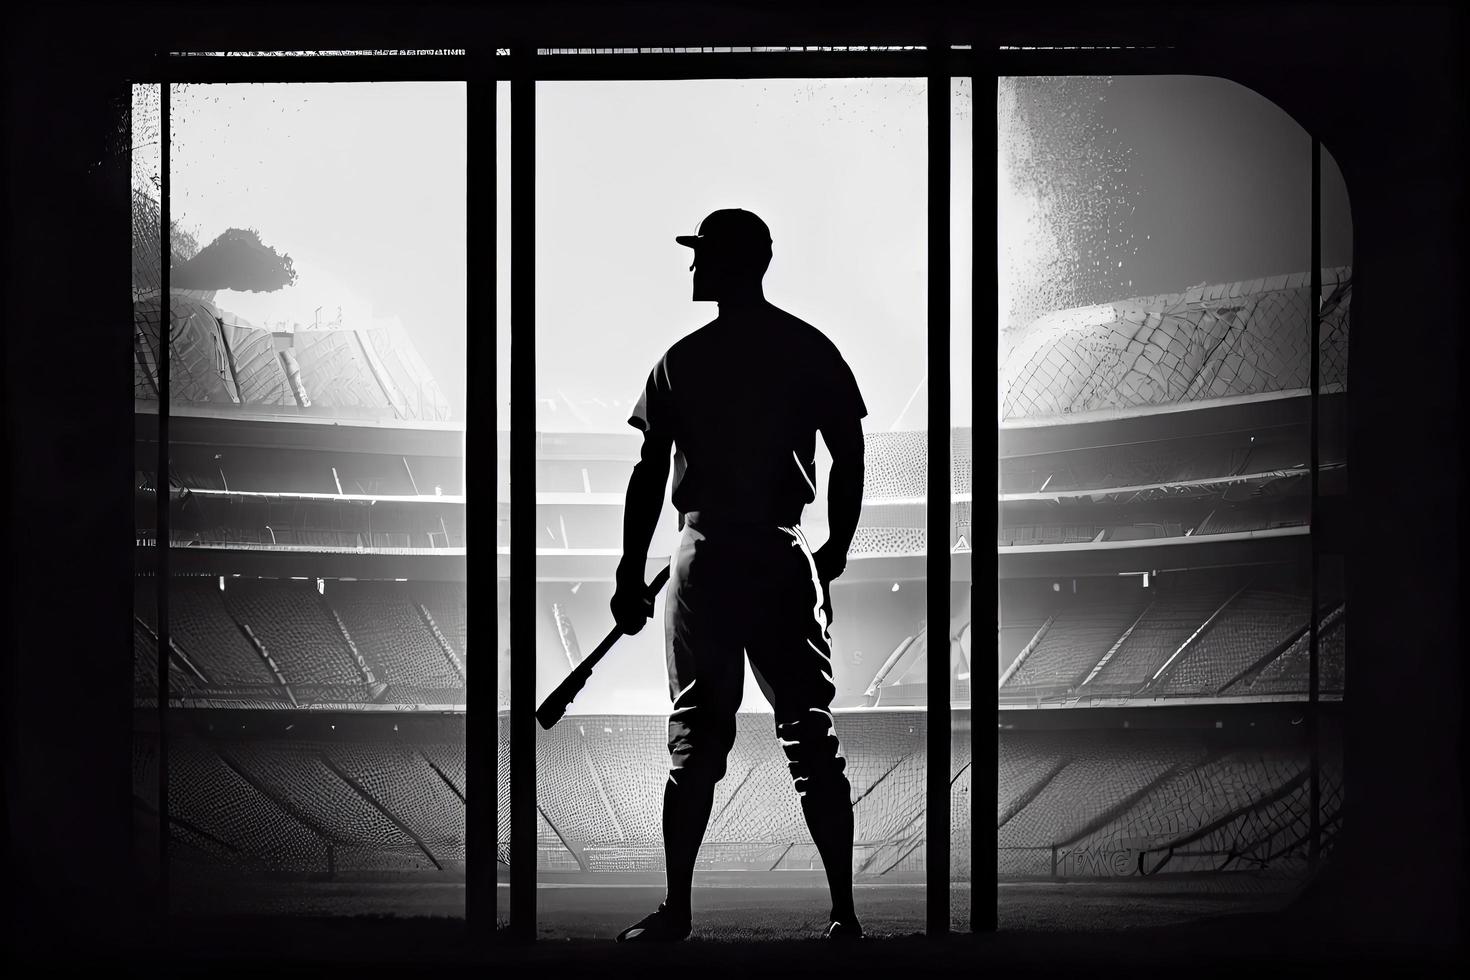 silueta, el imagen de un béisbol jugador con un murciélago en el antecedentes de el estadio foto